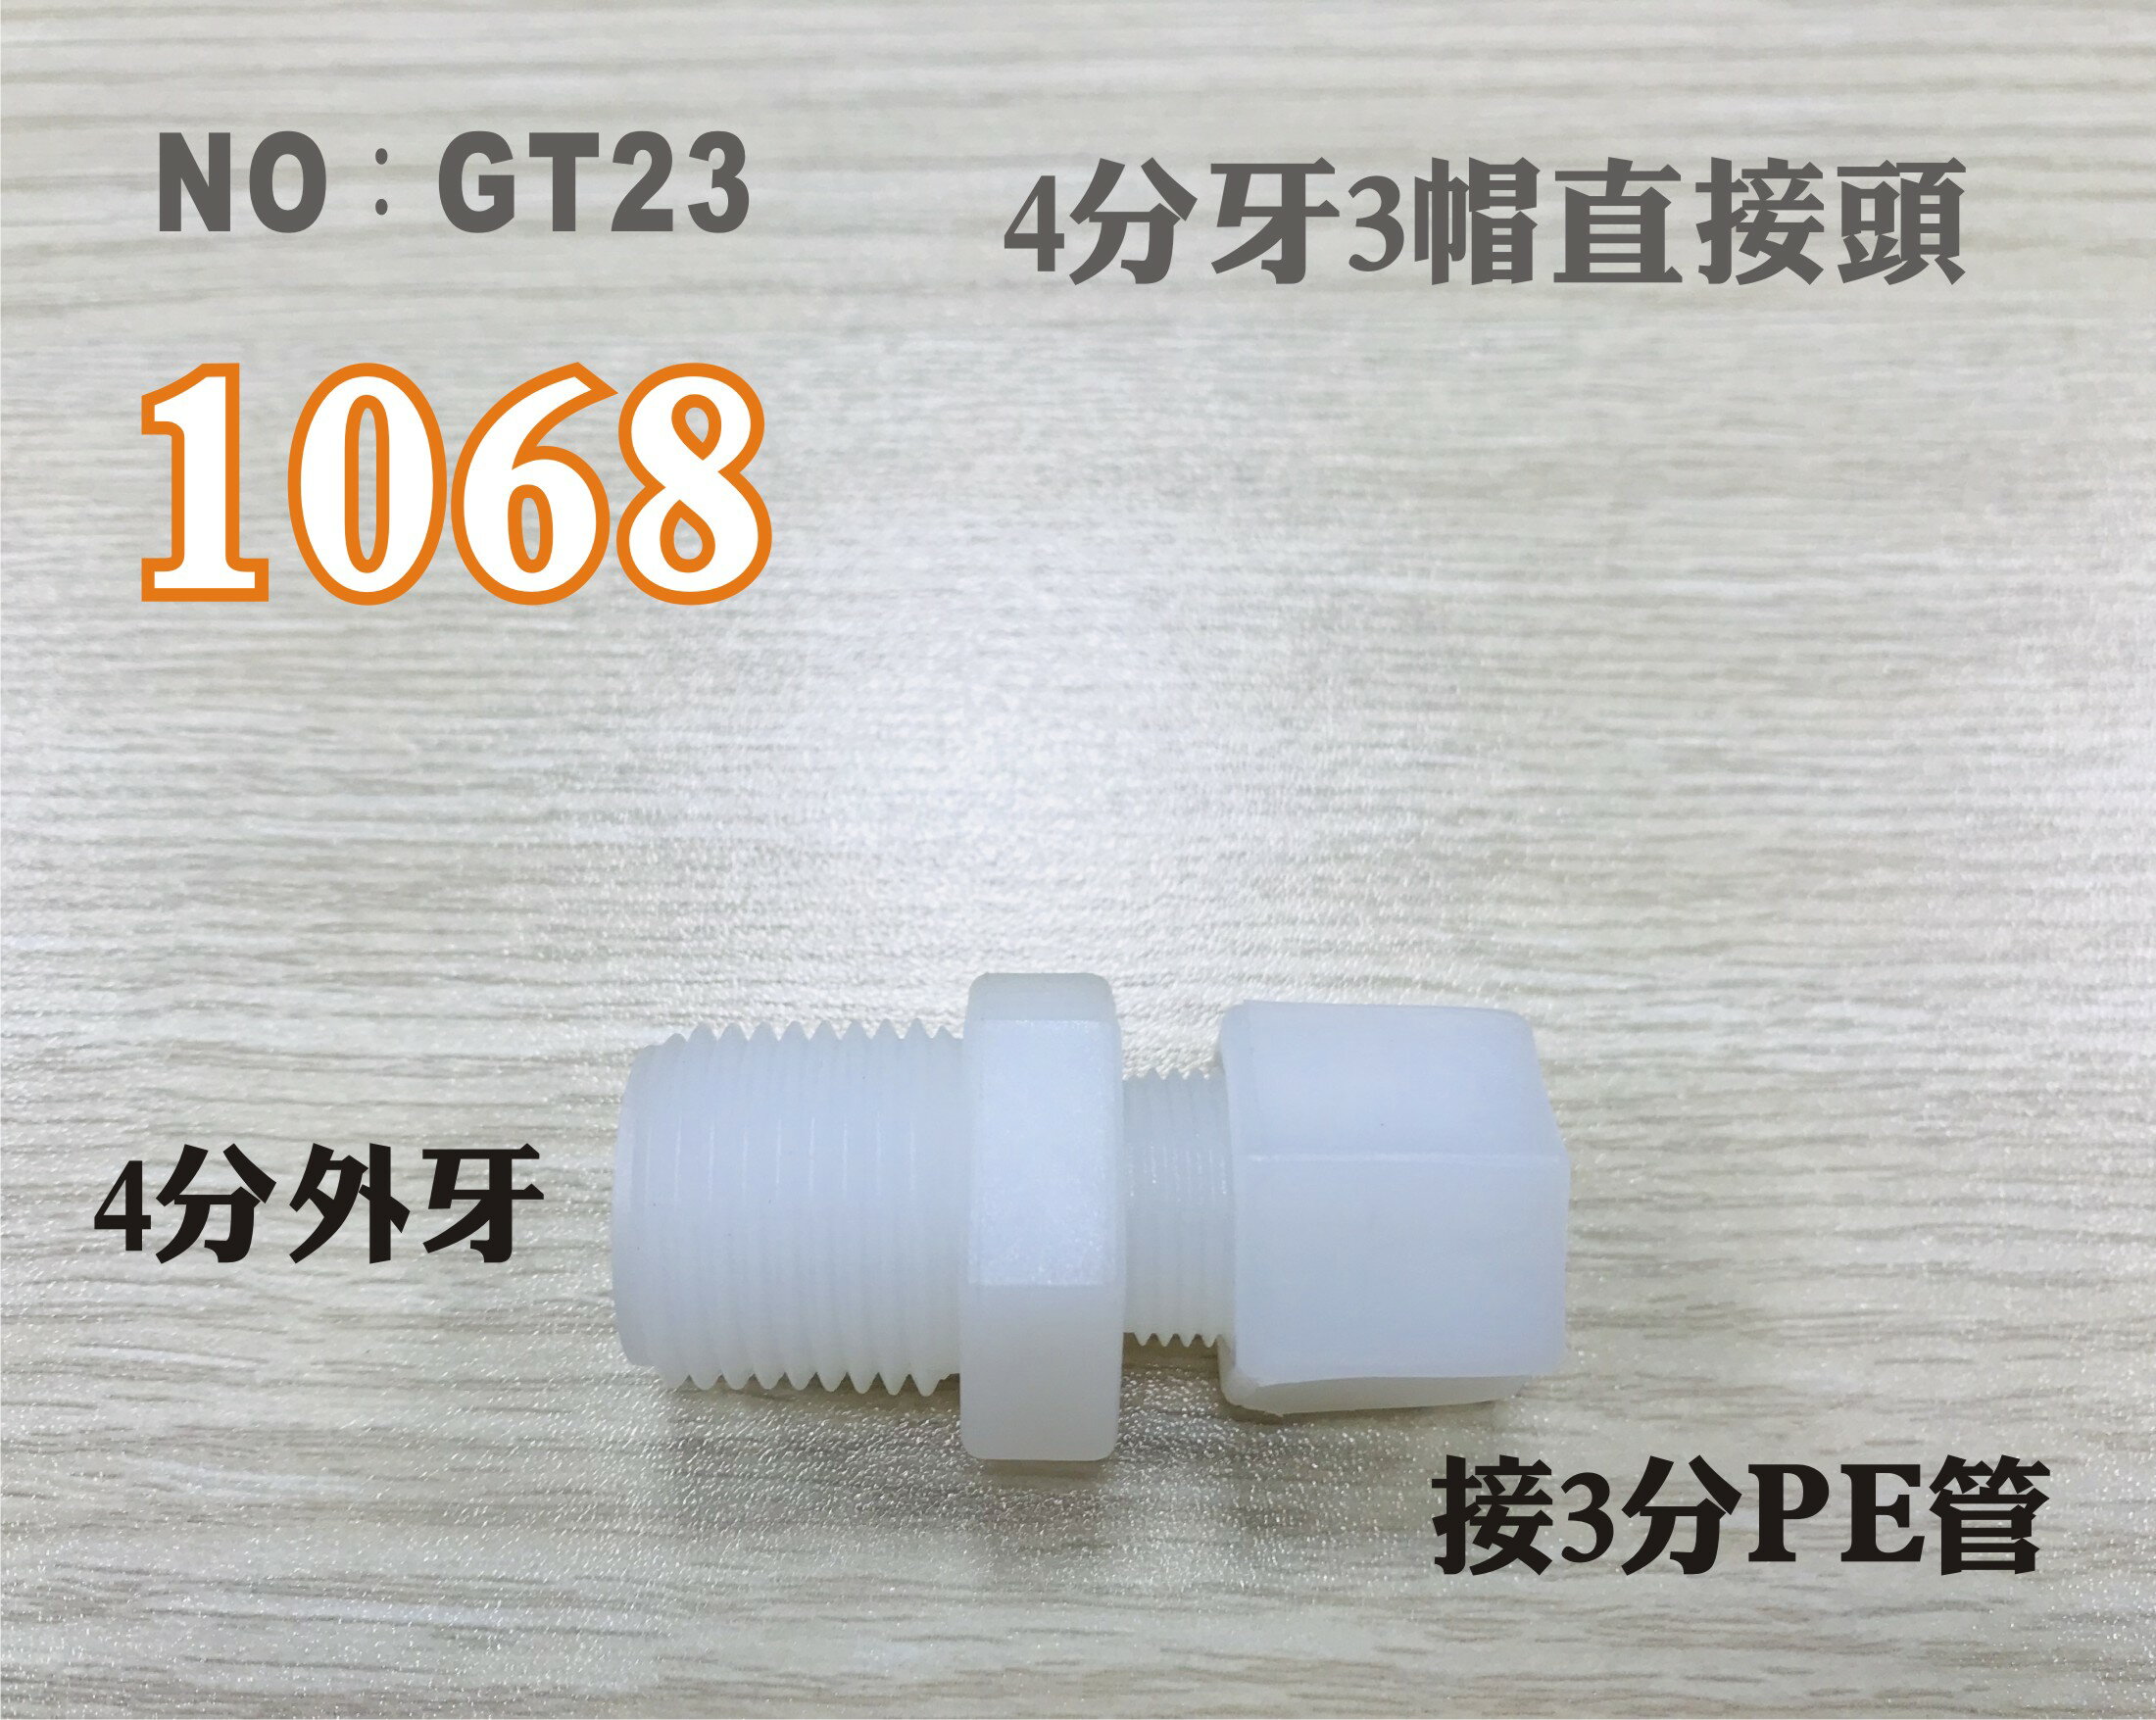 【龍門淨水】塑膠接頭 1068 4分牙接3分管 3分直的接頭 台灣製造 4牙3帽直接頭 直購價25元(GT23)